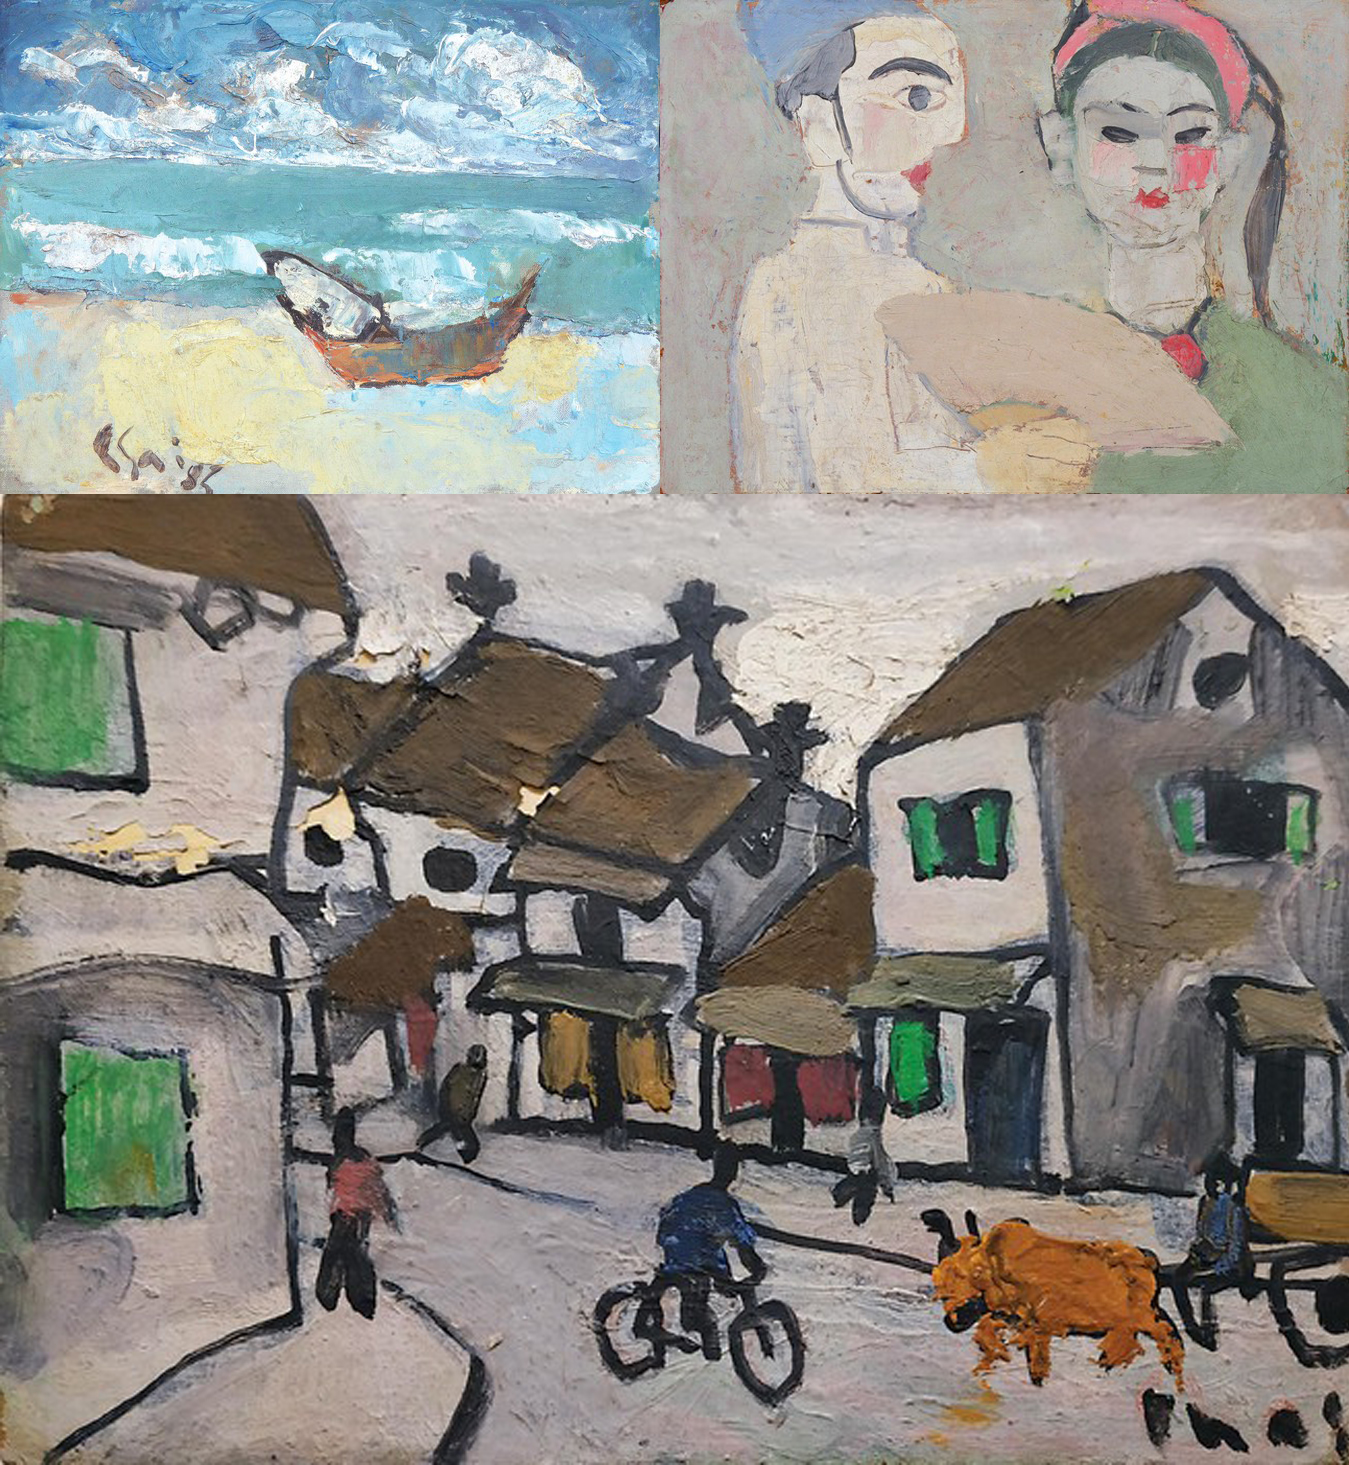 Tháng 6/2021, nhà đấu giá Larasati (Singapore) giới thiệu 3 tác phẩm: Biển (sơn dầu trên carton, phía trên bên trái), Hai diễn viên chèo cầm quạt (sơn dầu trên bìa cứng, phía trên bên phải) và hố với người đi xe đạp và xe bò - ảnh